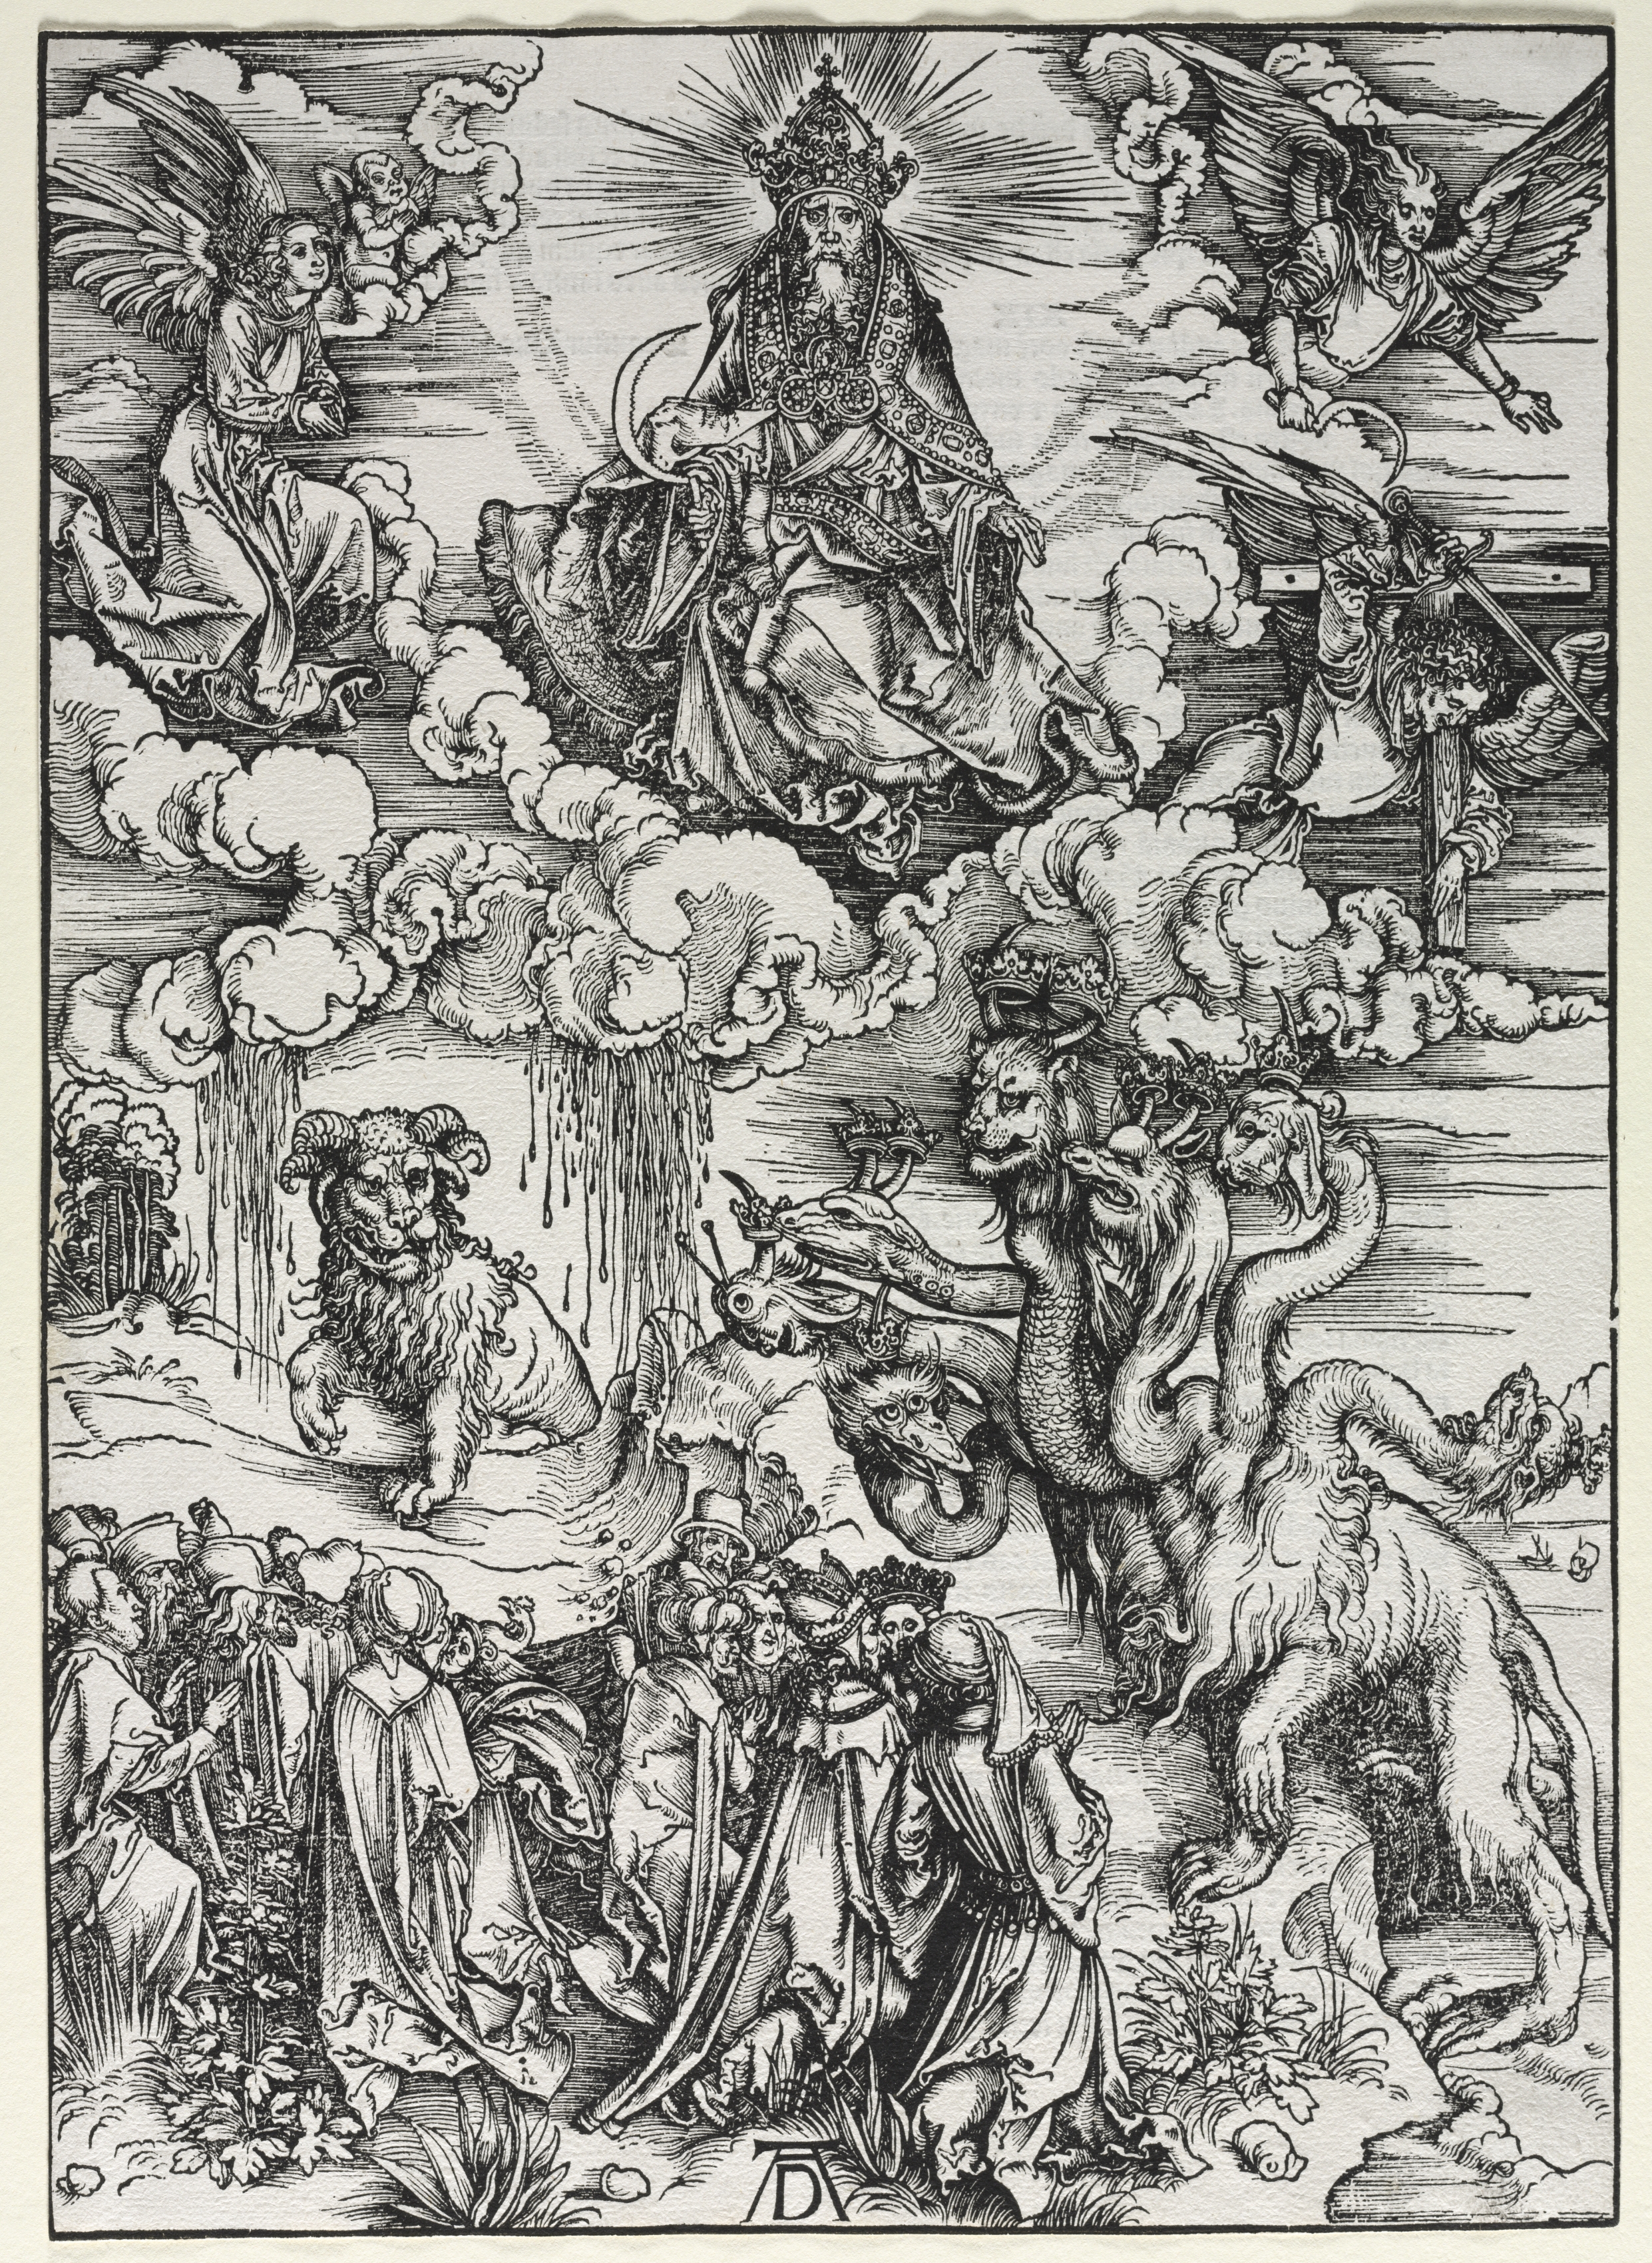 Revelation of St. John: Beast with Ram's Horns